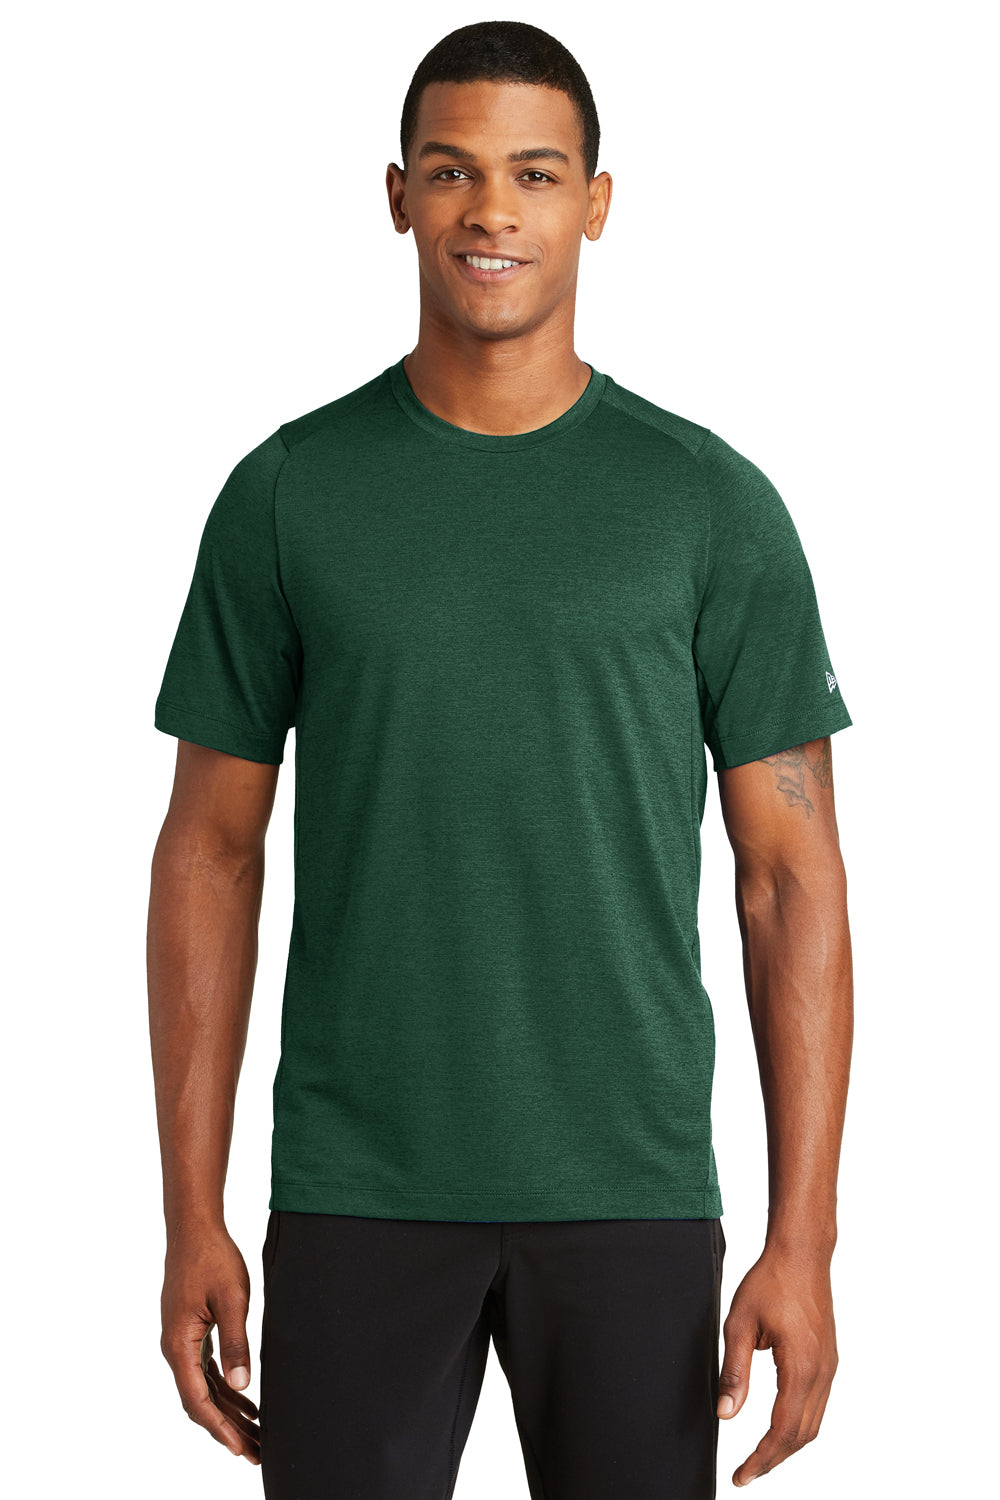 New Era NEA200 Mens Series Performance Jersey Moisture Wicking Short Sleeve Crewneck T-Shirt Forest Green Front